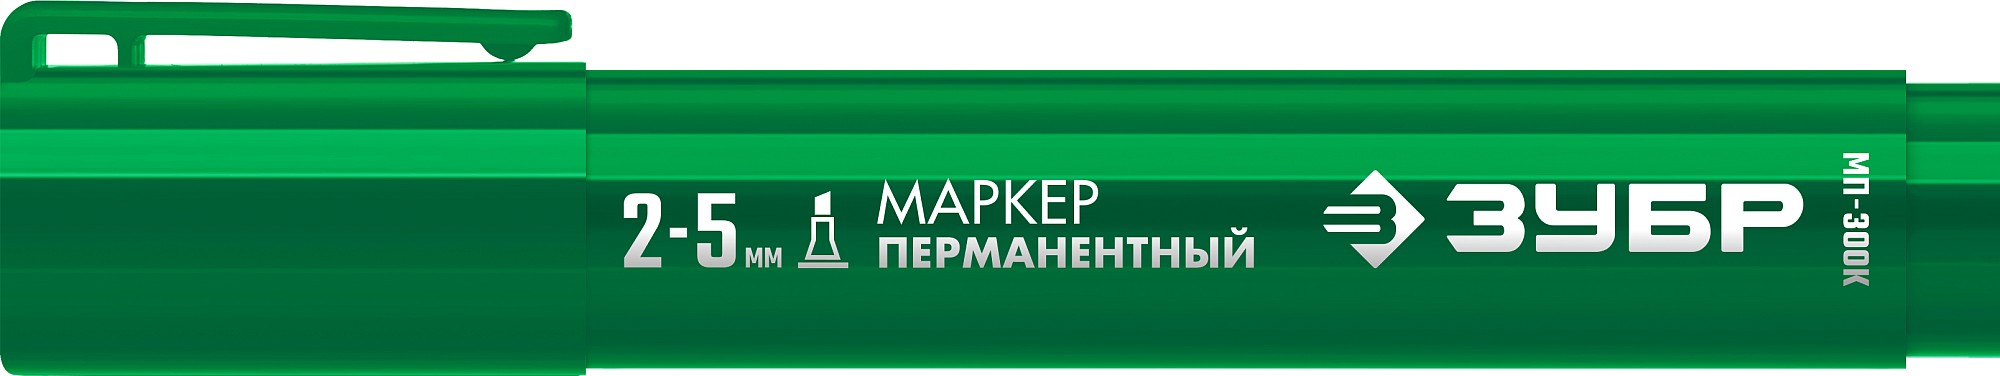 ЗУБР МП-300К 2-5 мм, клиновидный, зеленый, Перманентный маркер, ПРОФЕССИОНАЛ (06323-4)